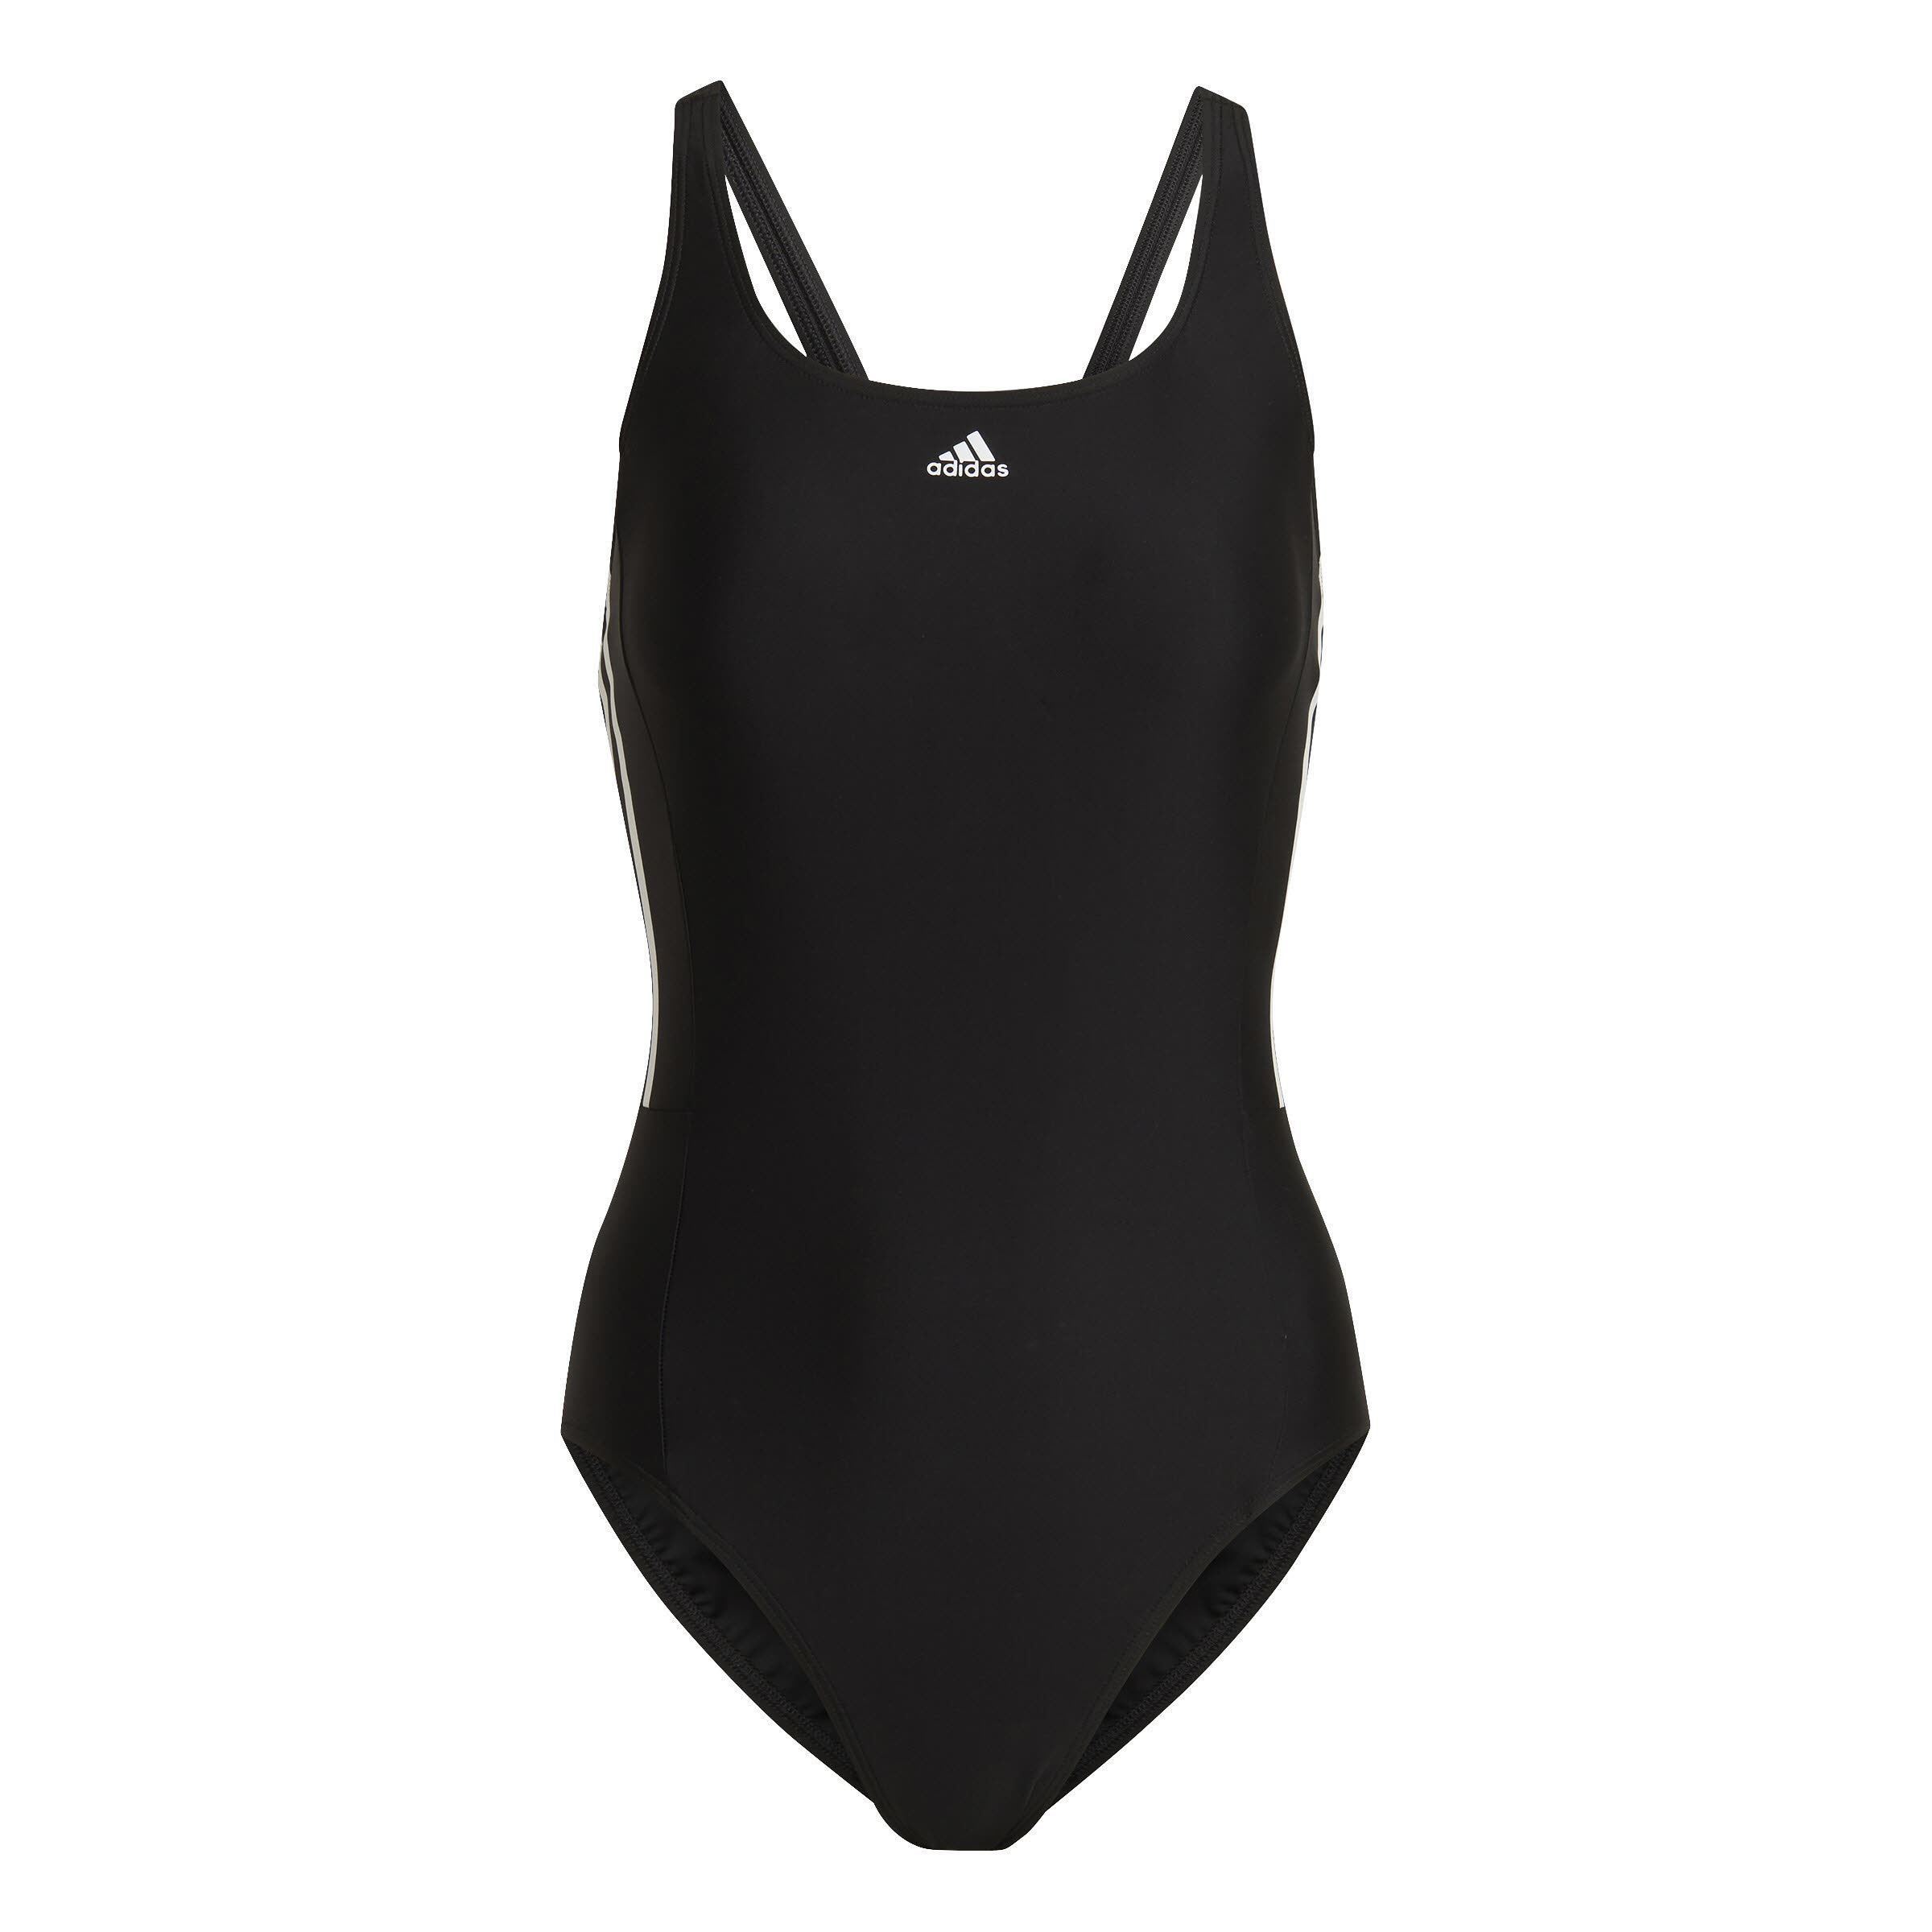 adidas 3S MID SUIT Damen Badeanzug Einteiler Schwimmanzug schwarz NEU